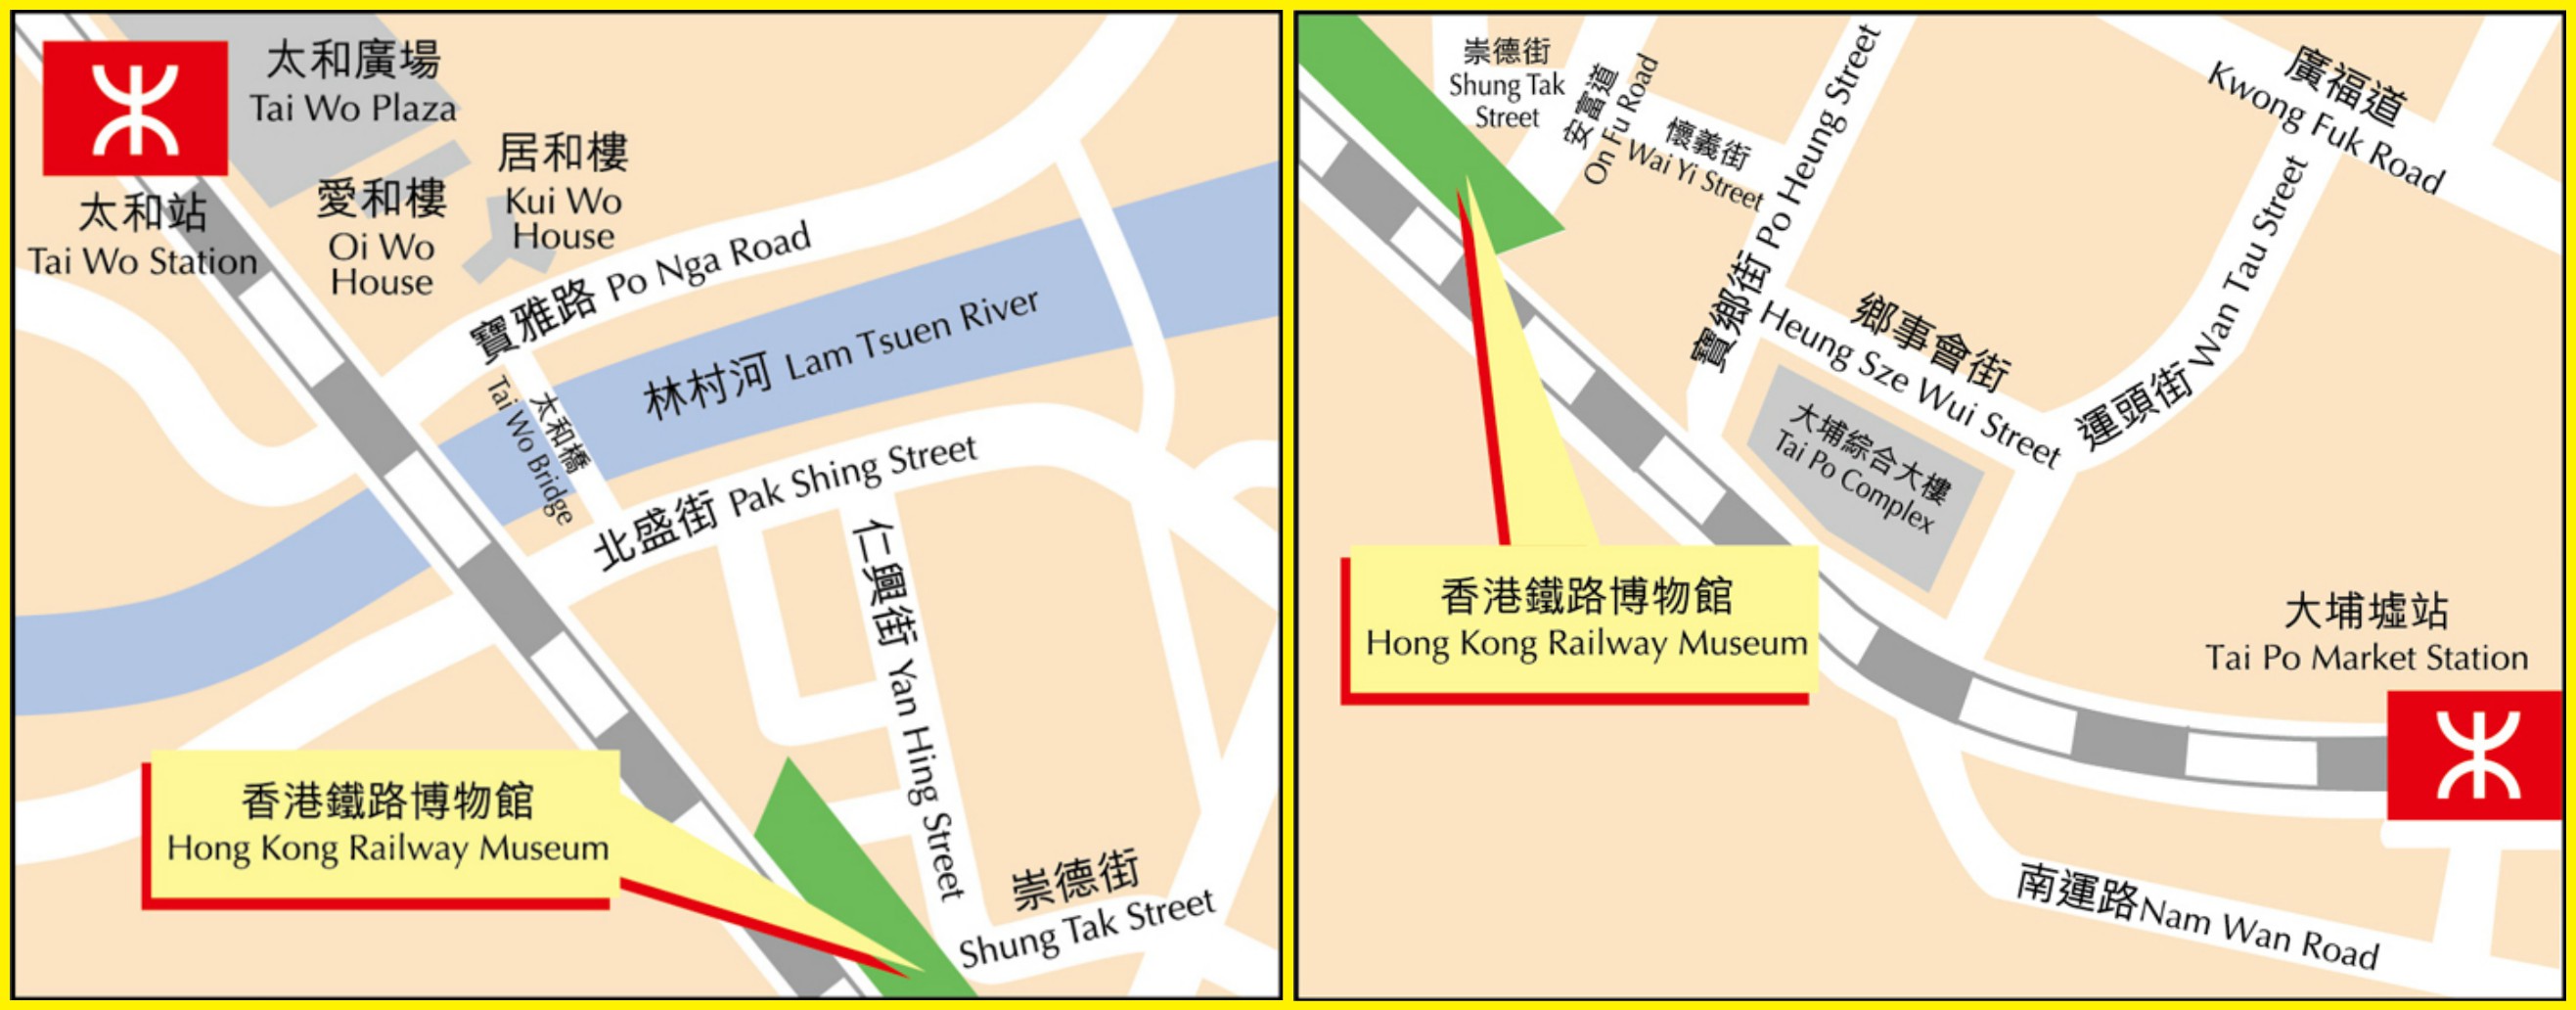 香港铁路博物馆的位置